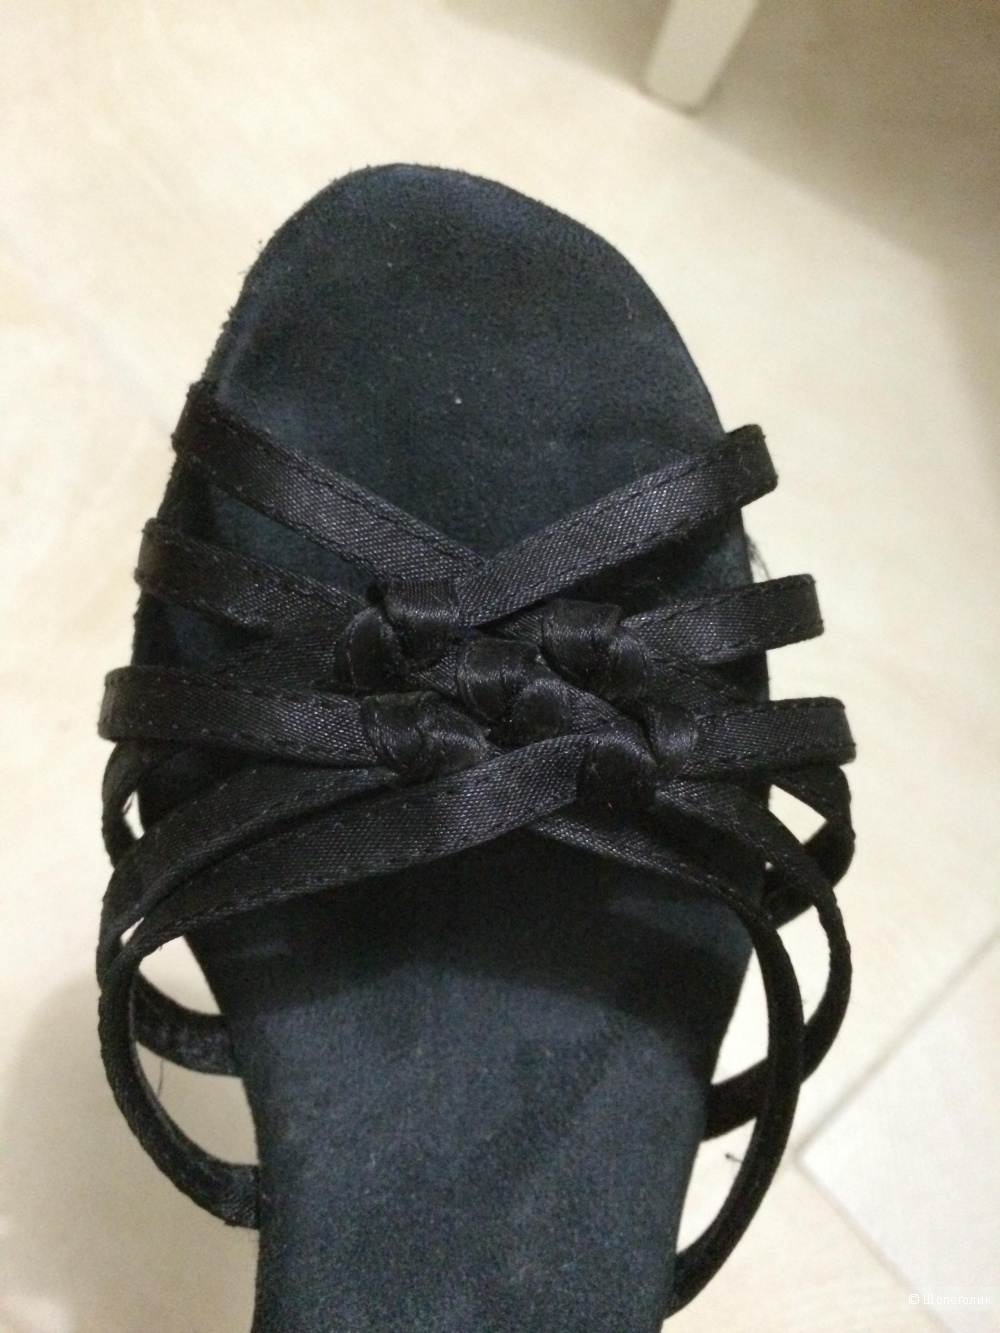 Сатиновые танцевальные туфли Dance Master для латины, размер 37-37,5